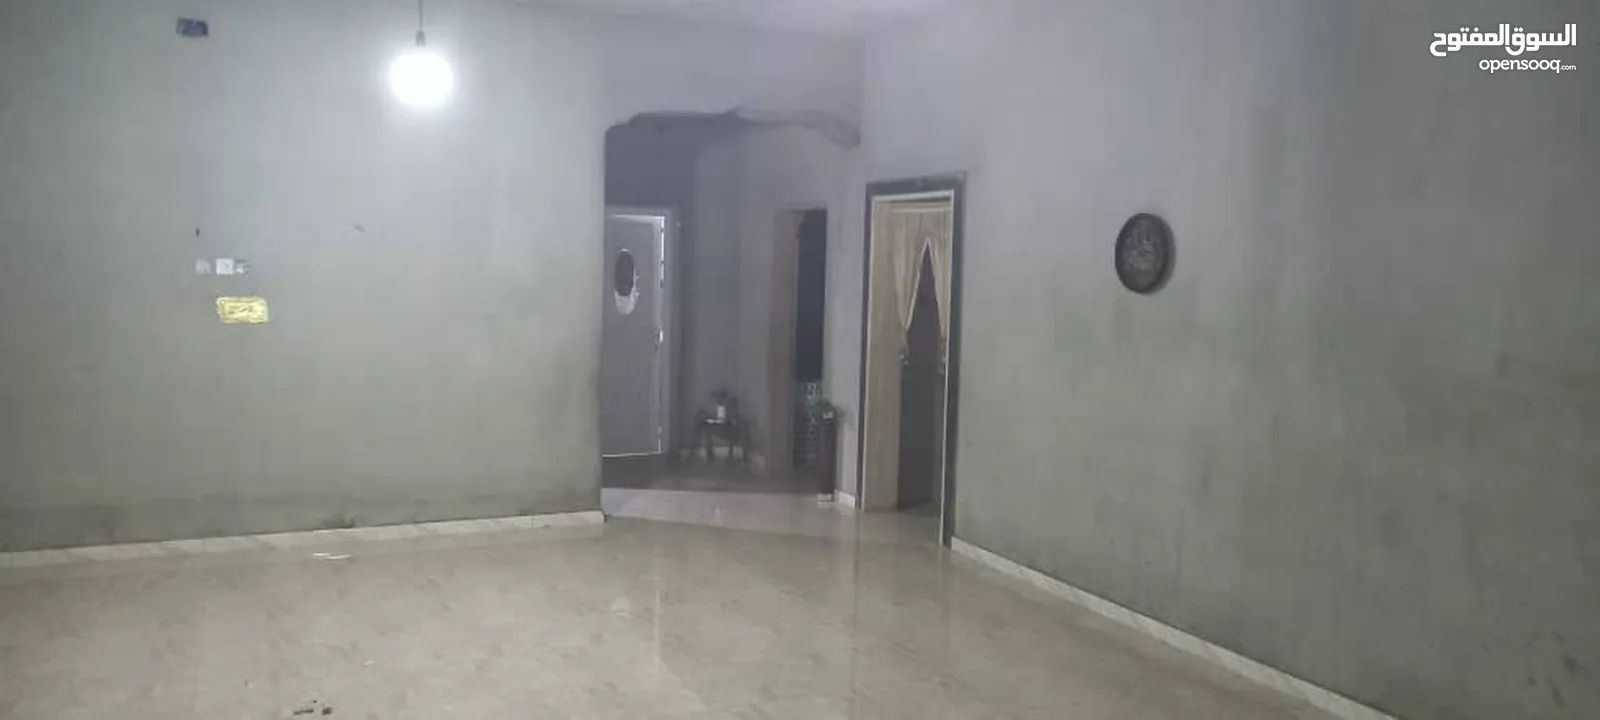 منزل للبيع في سي خليفة بسعر فرصة 125 الف